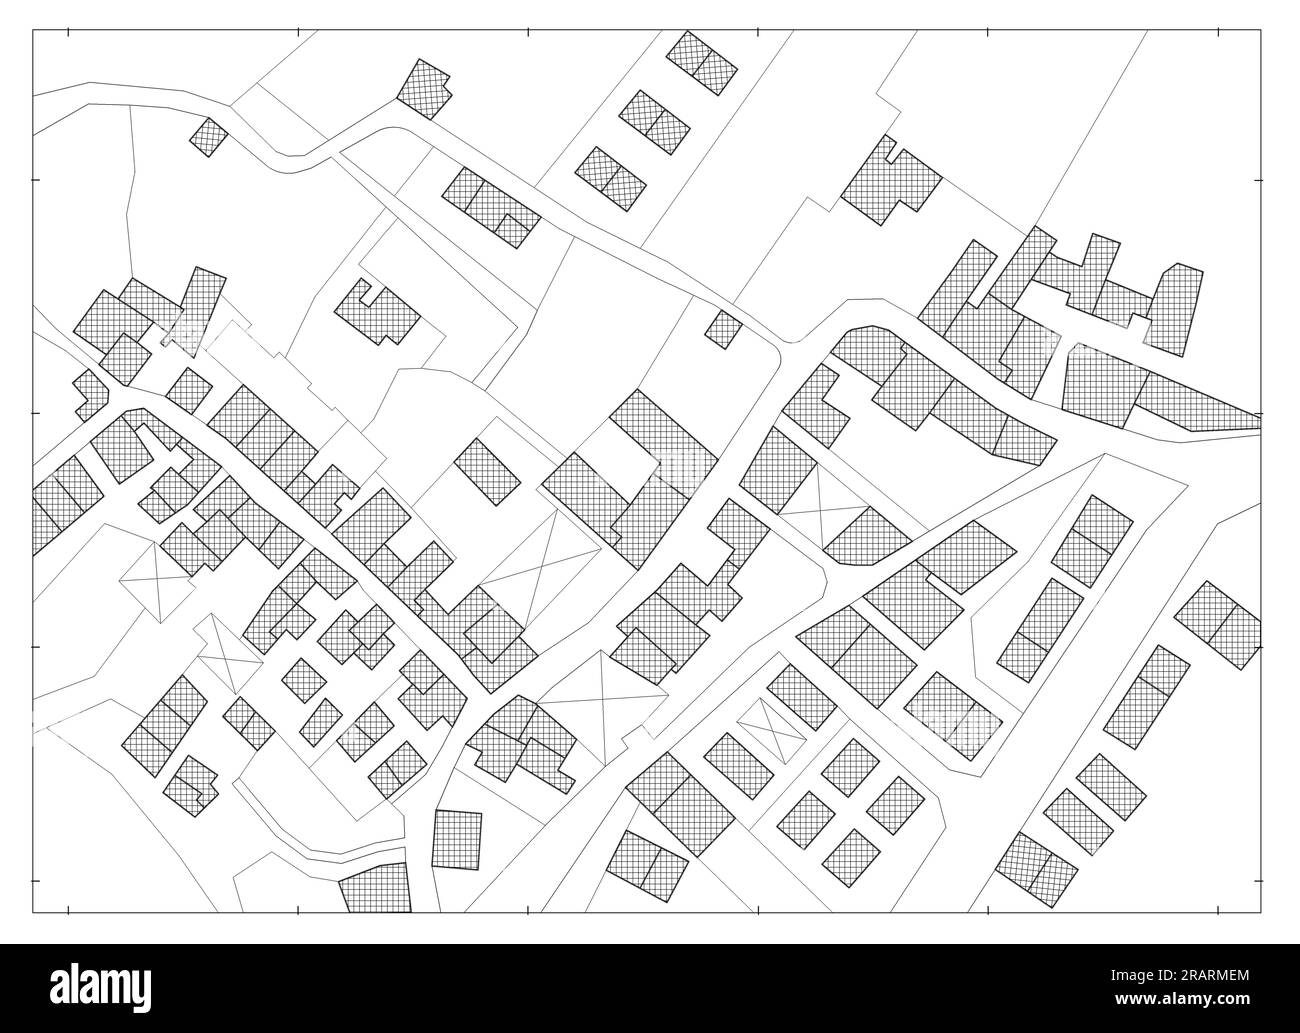 Imaginäre Kataster-karte des Territoriums mit Gebäuden und Straßen Stockfoto